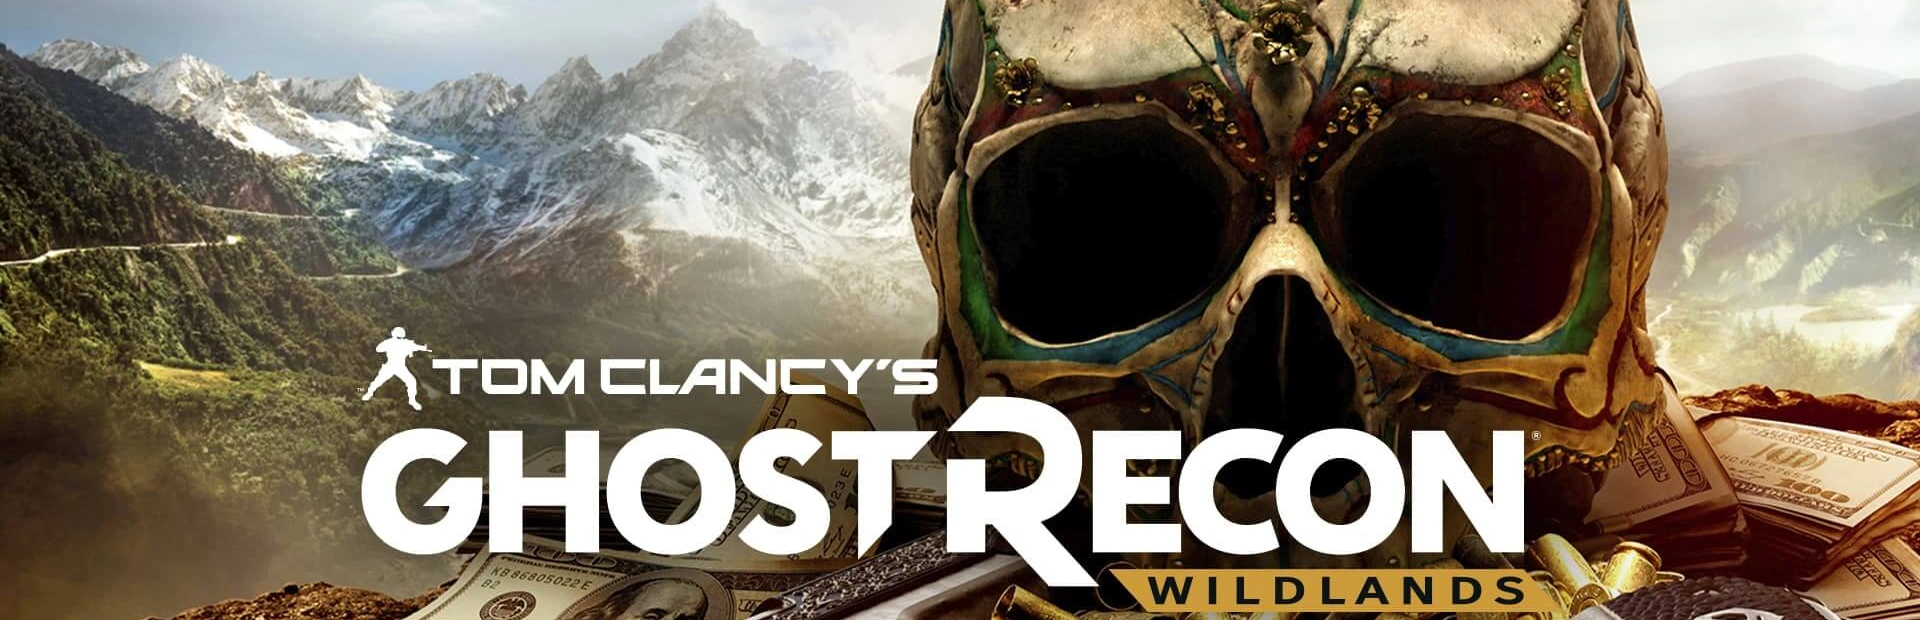 دانلود بازی Tom Clancy's Ghost Recon برای PC | گیمباتو